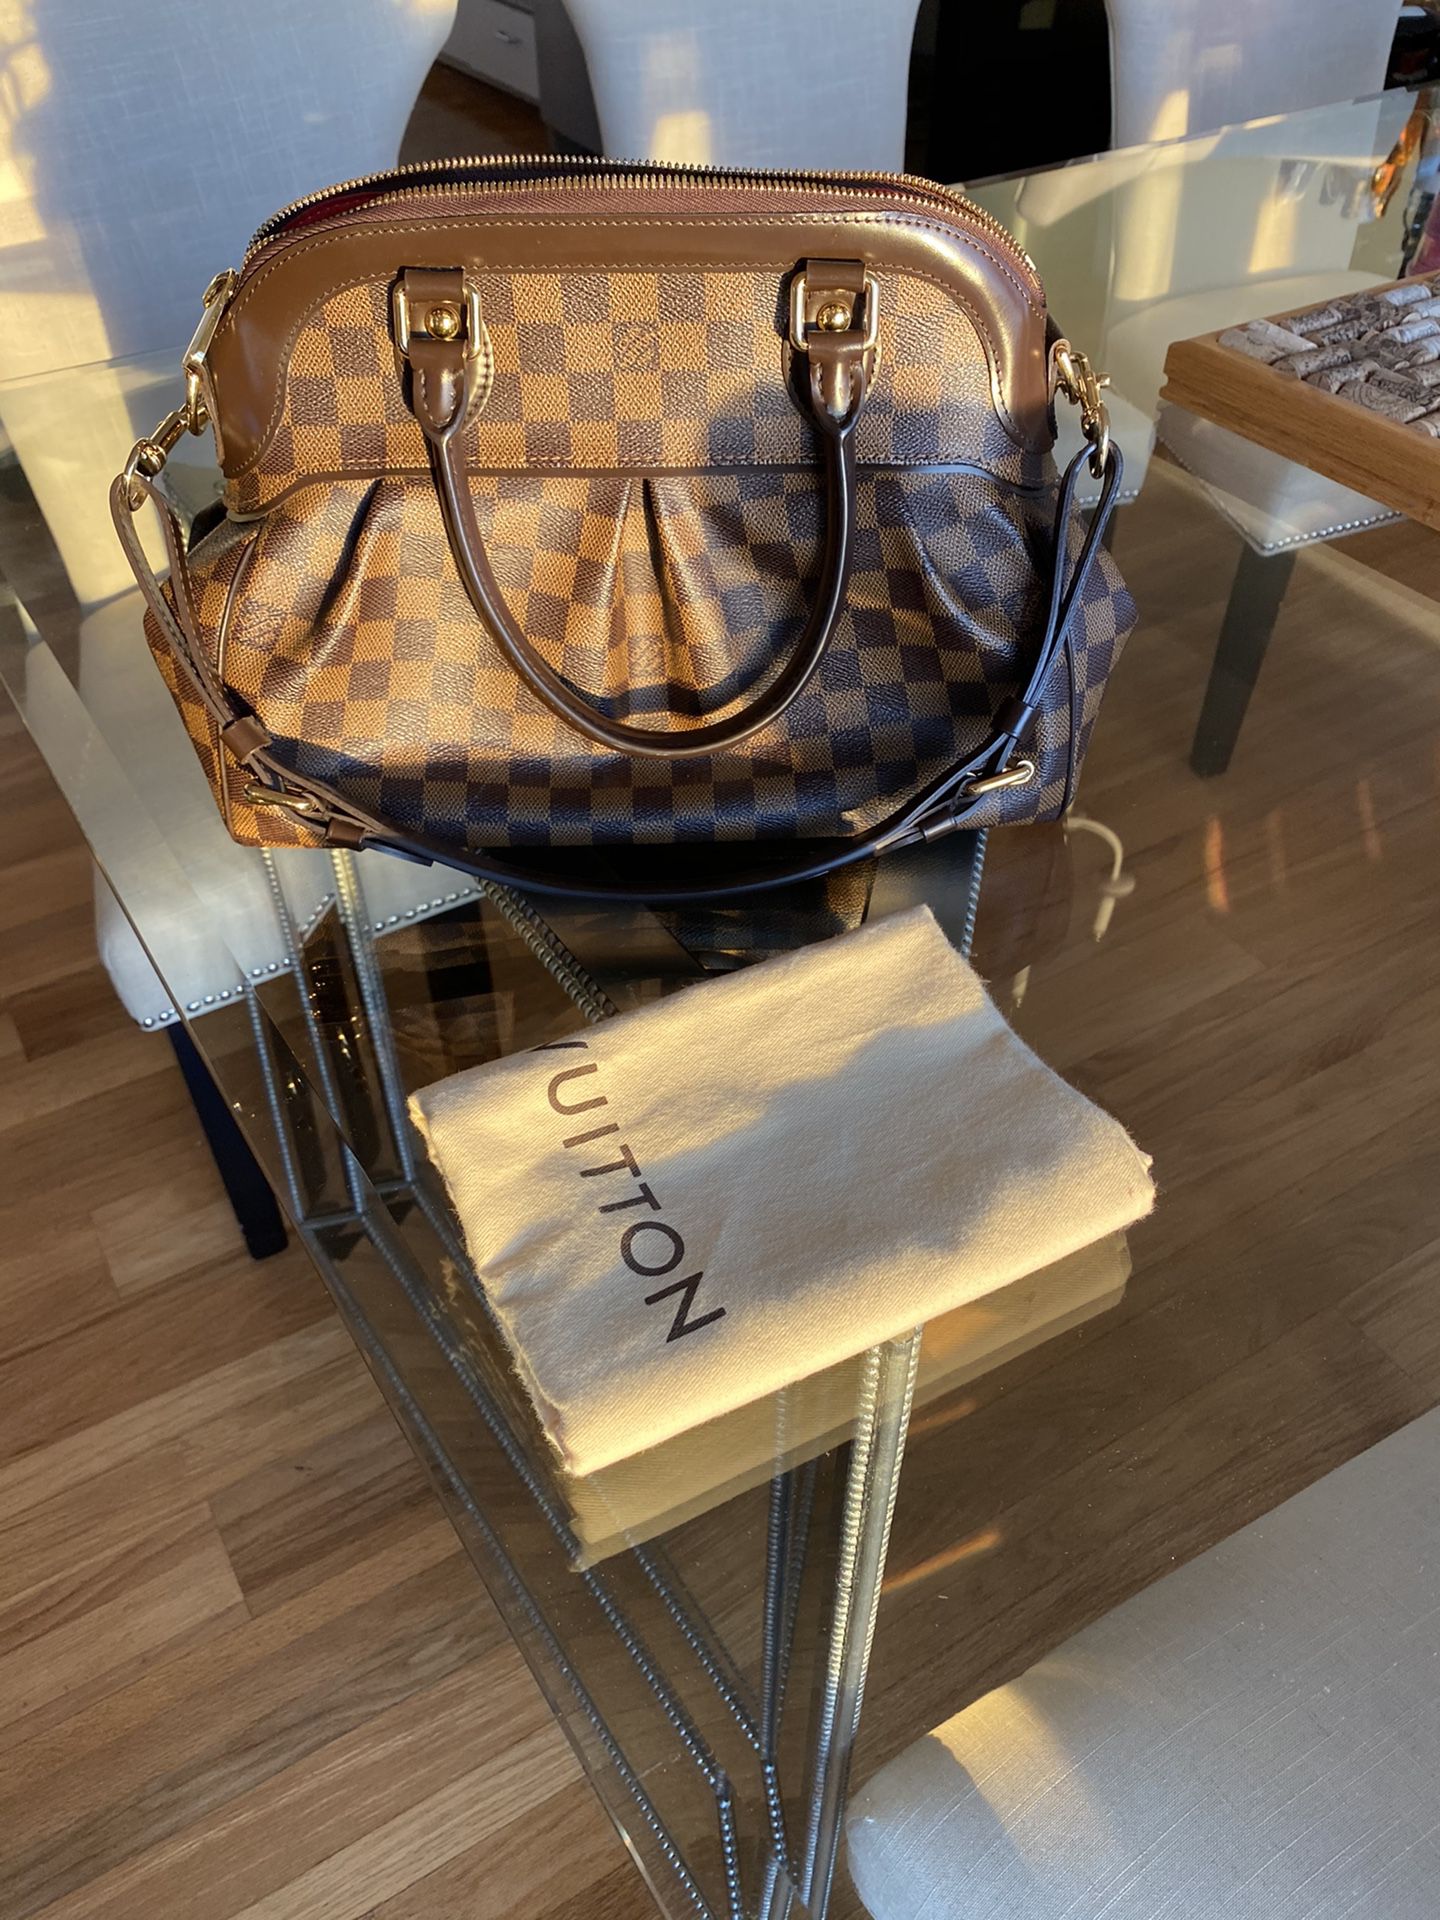 Louis Vuitton, Bags, Authentic Louis Vuitton Damier Ebene Trevi